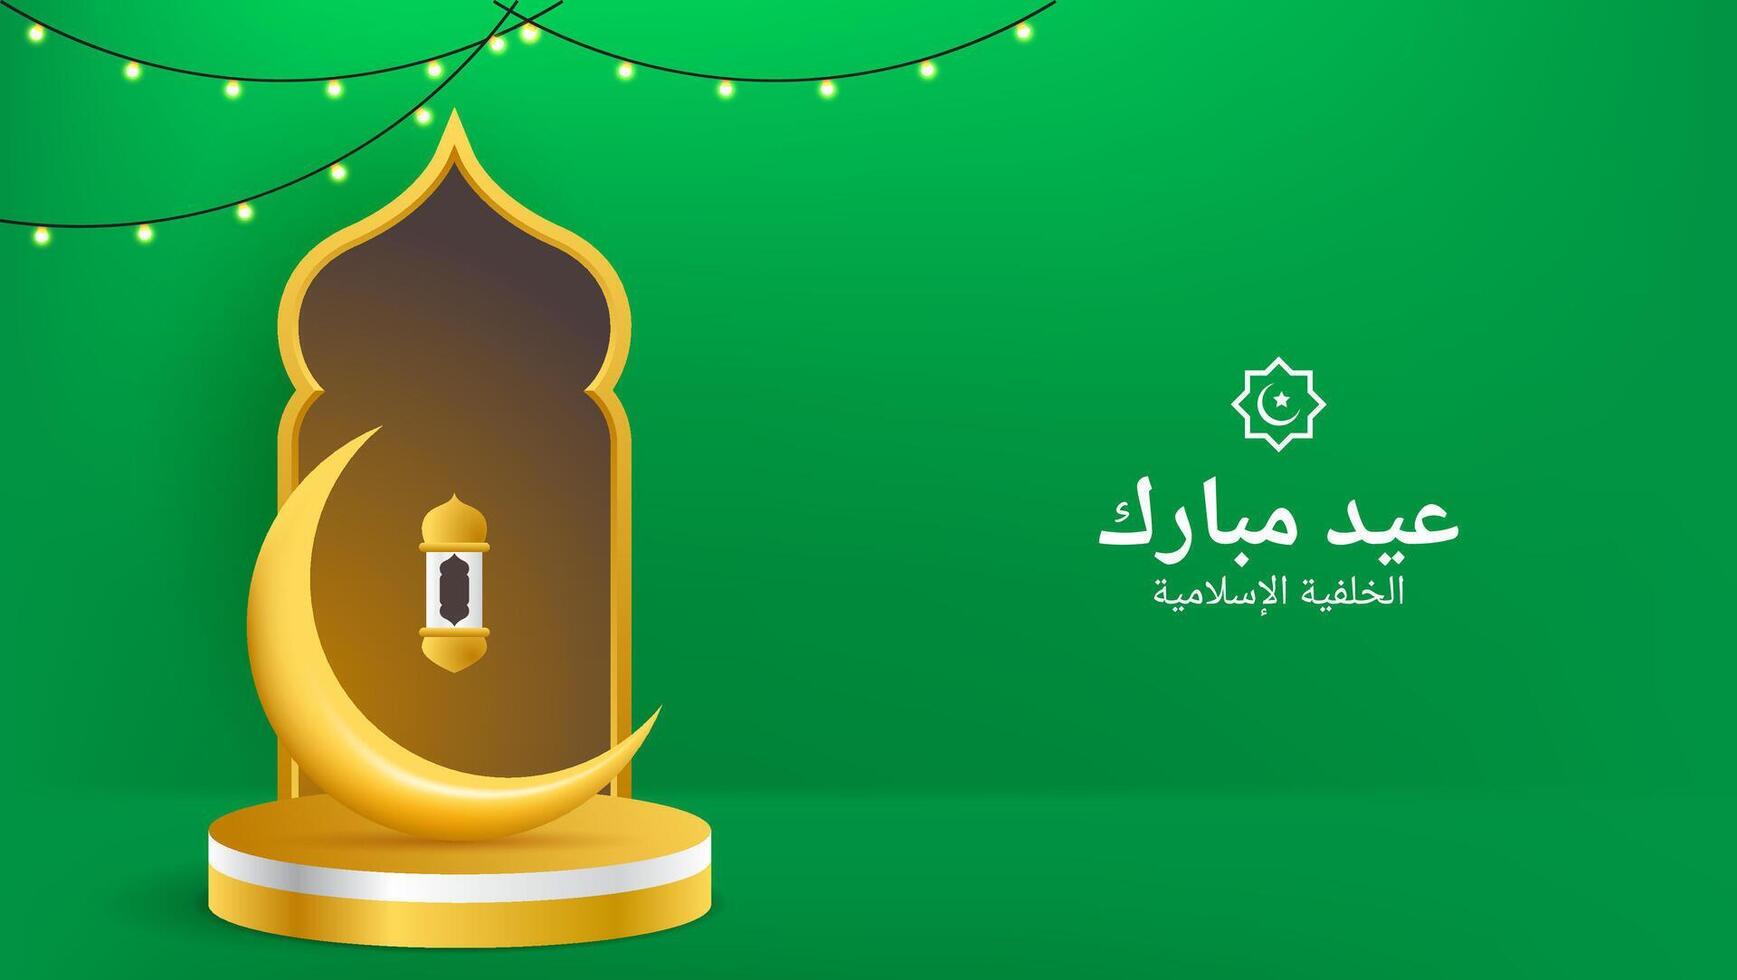 Islamitisch achtergrond met halve maan, lantaarn, poort en podium in goud en groen kleur. Super goed voor vieren van Islamitisch vakantie. vector illustratie